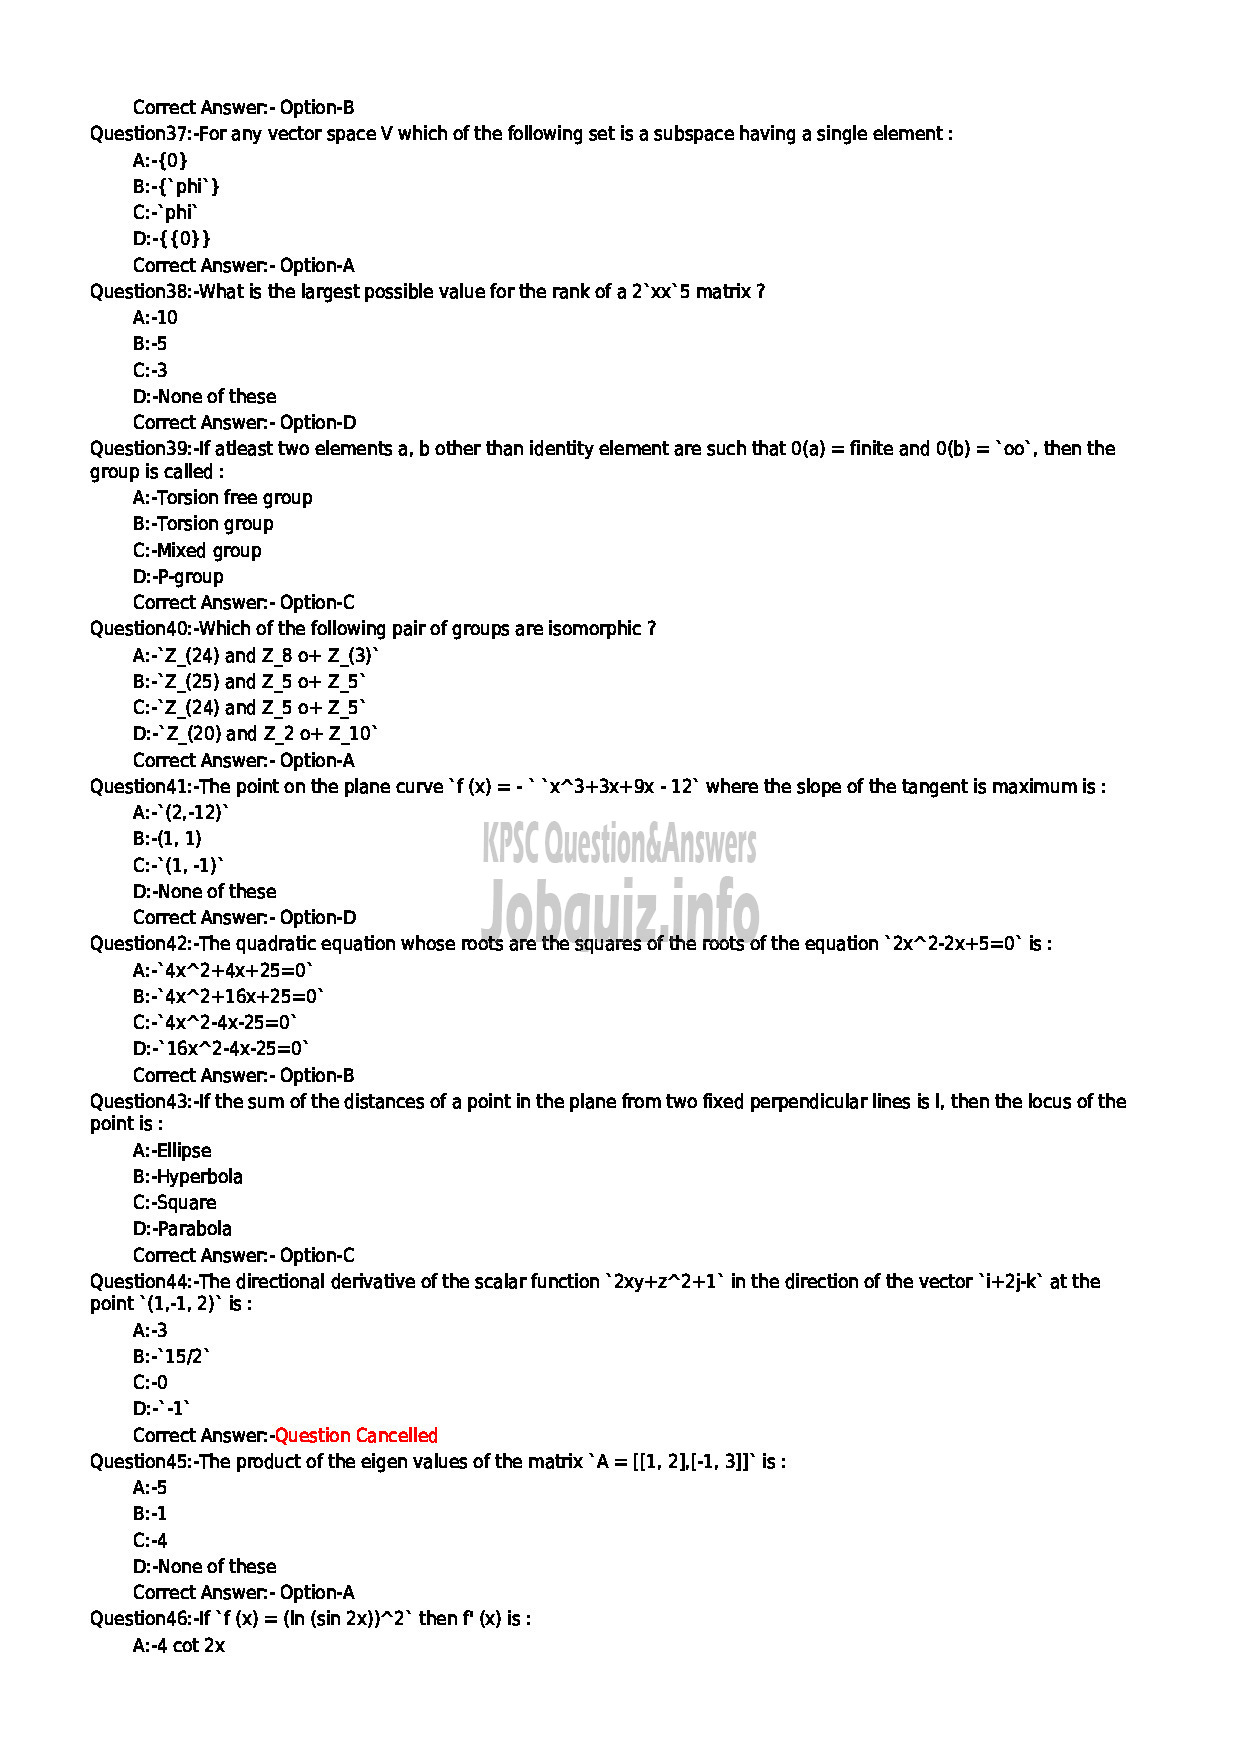 Kerala PSC Question Paper - CLERK TYPIST NCA HINDU NADAR VARIOUS-5